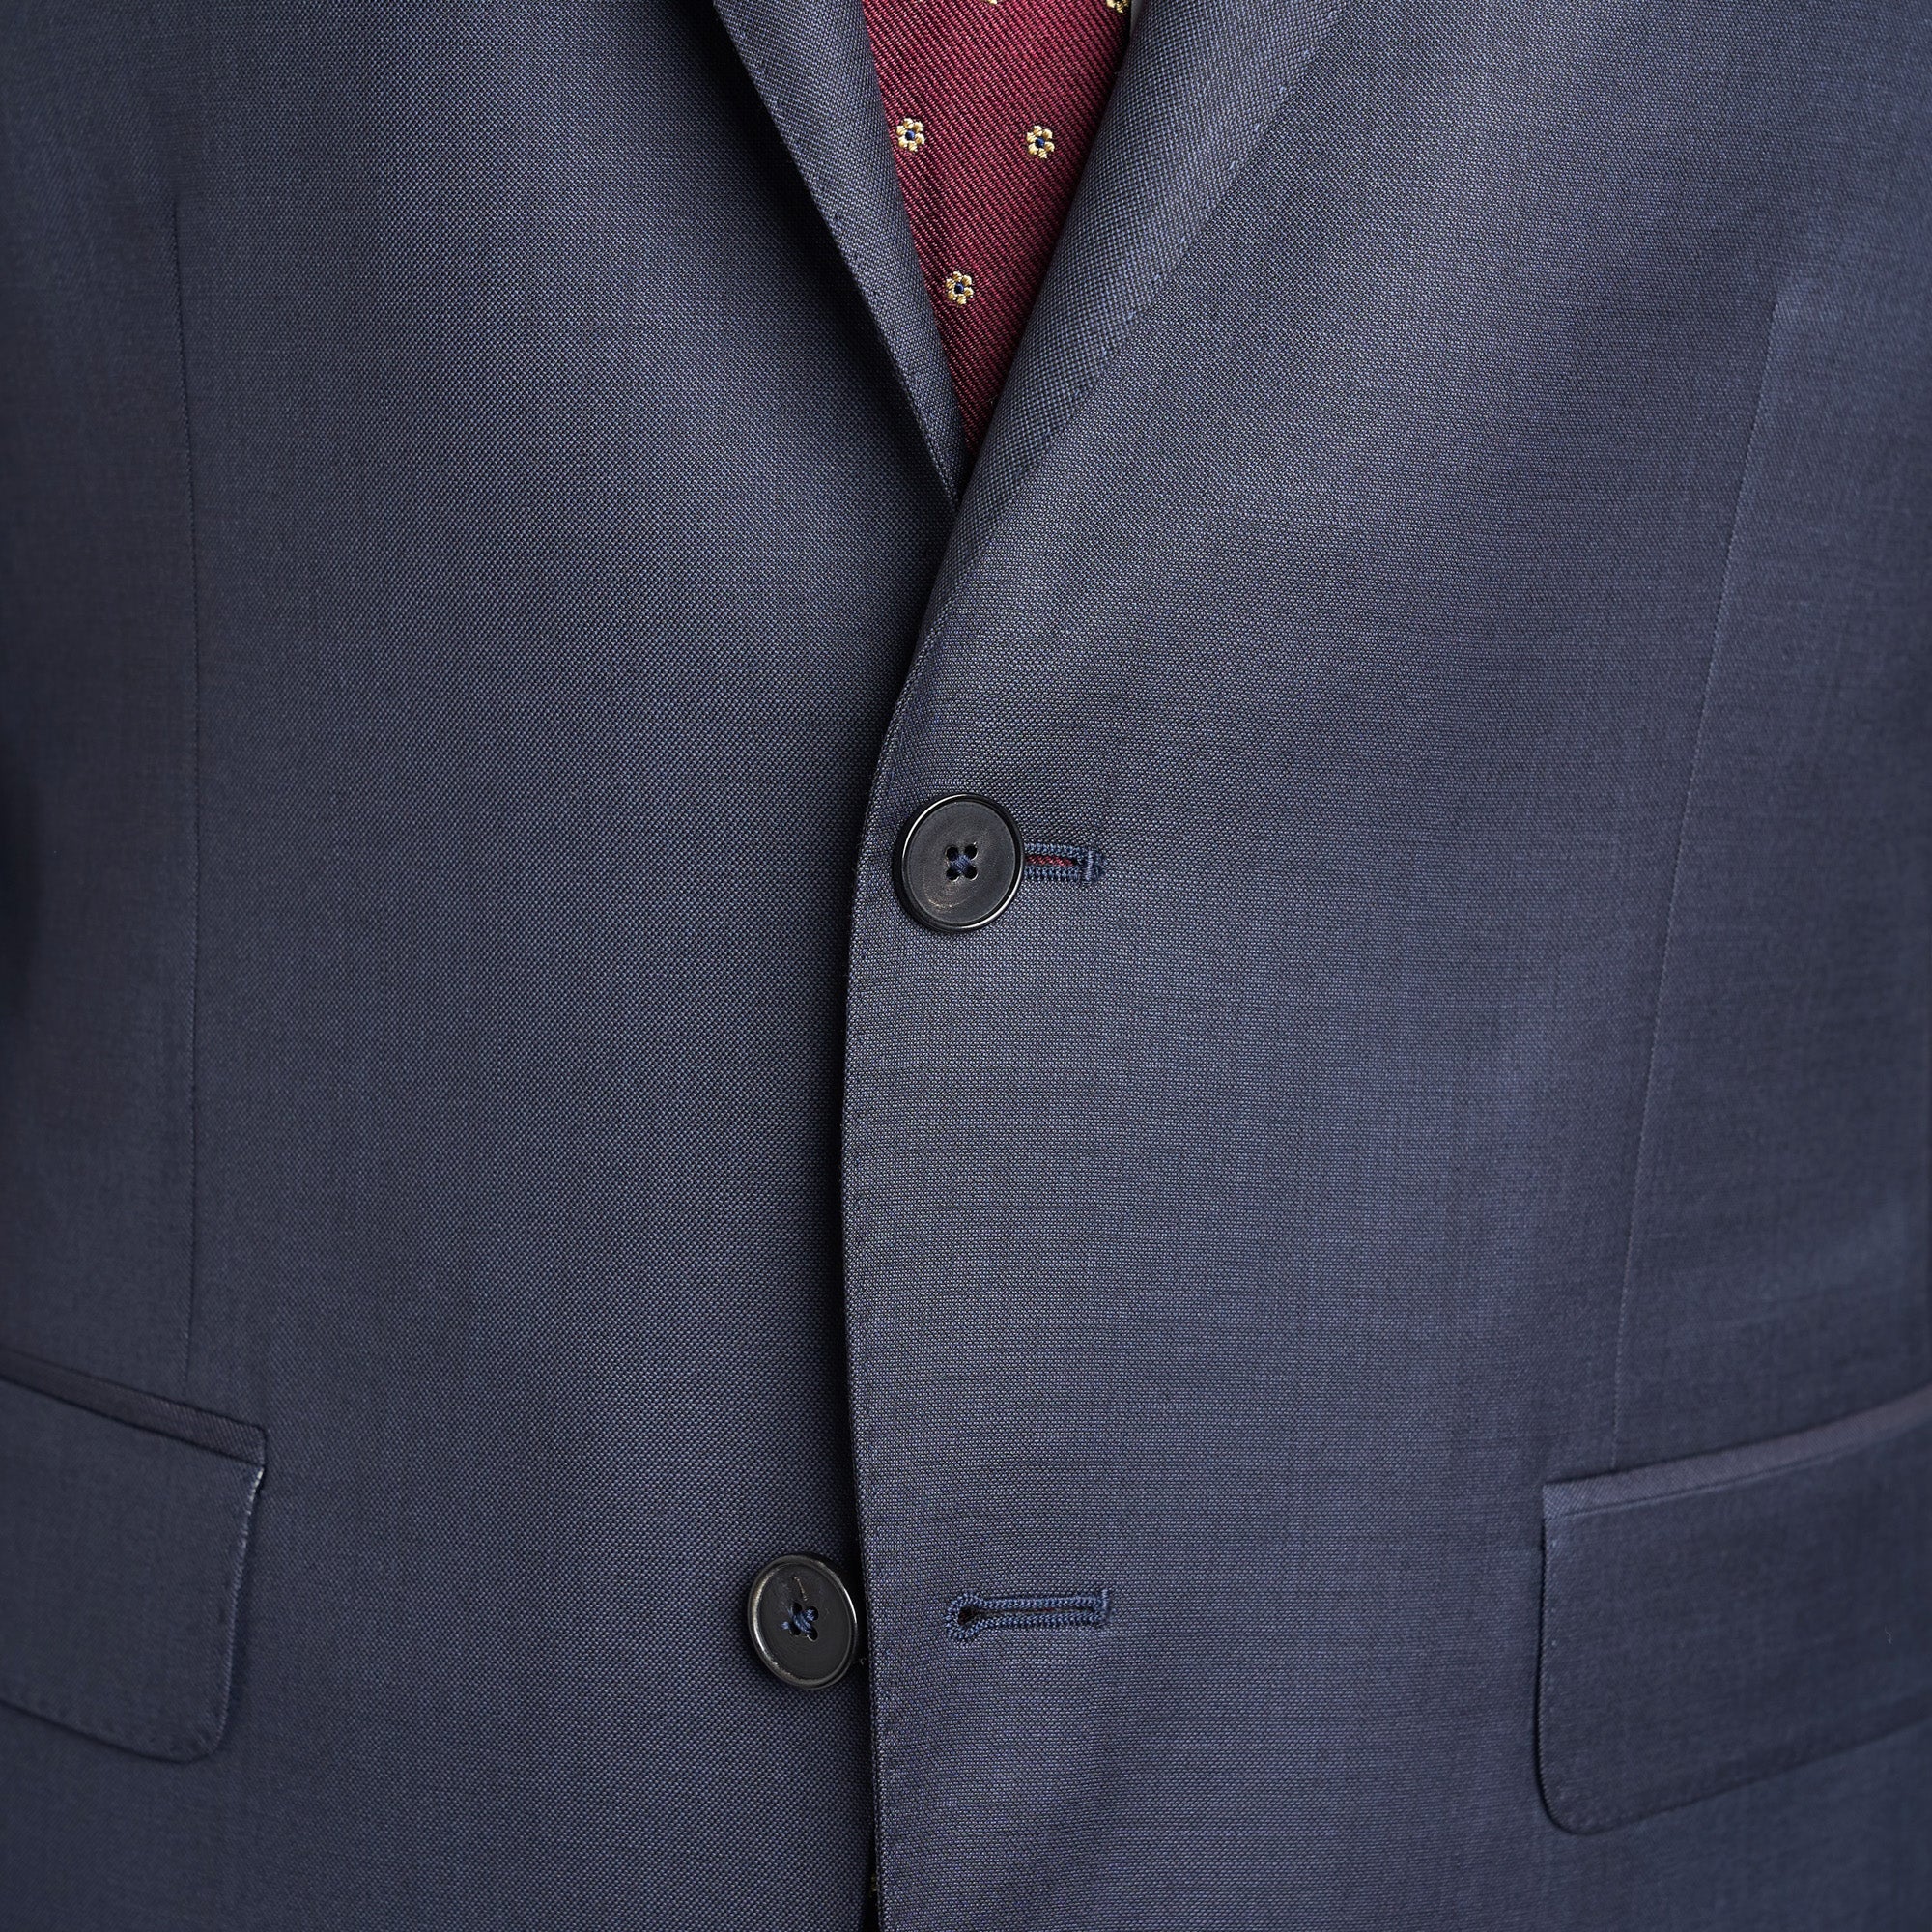 Suit jacket buttoned